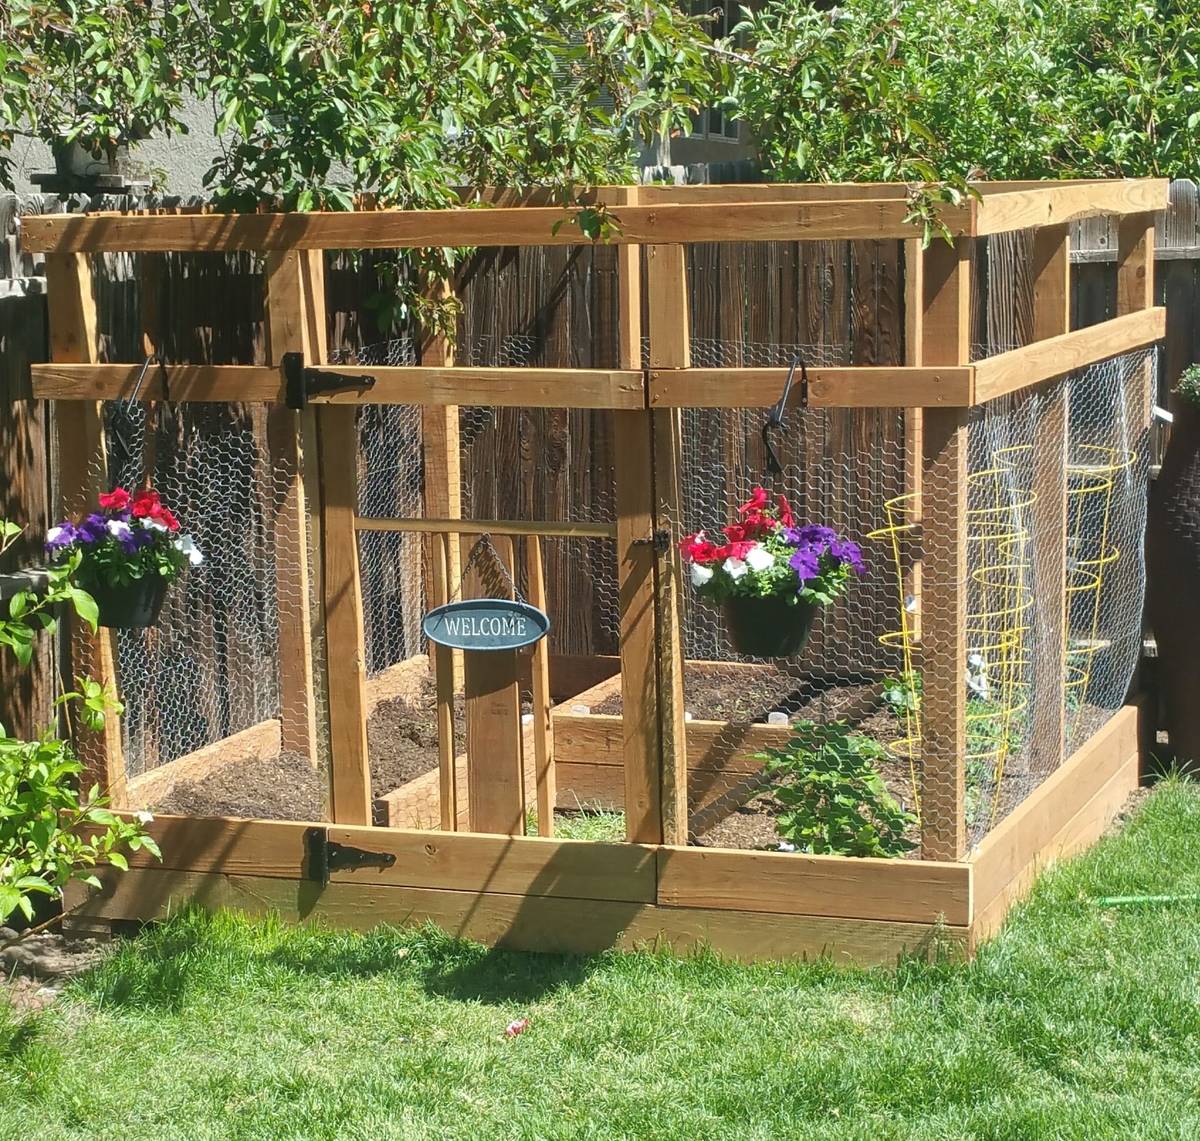 Small Enclosed Vegetable Garden Home Vegetable Garden